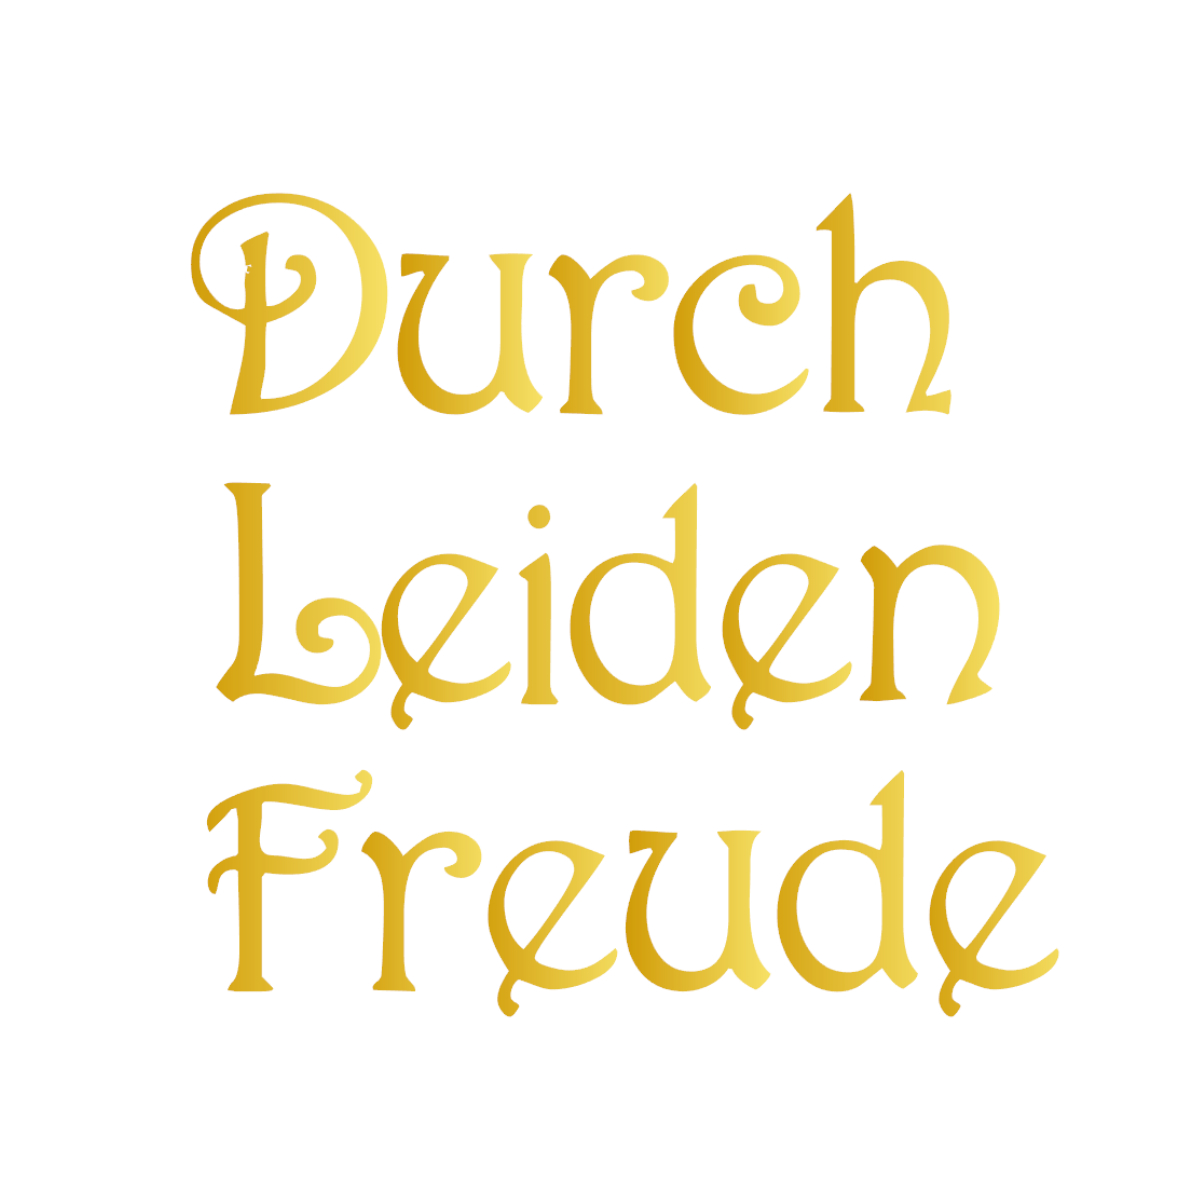 ウォールステッカー 名言 金 光沢 ベートーベン ドイツ語 Durch Leiden Freude Iby アイバイ ウォールステッカー 通販